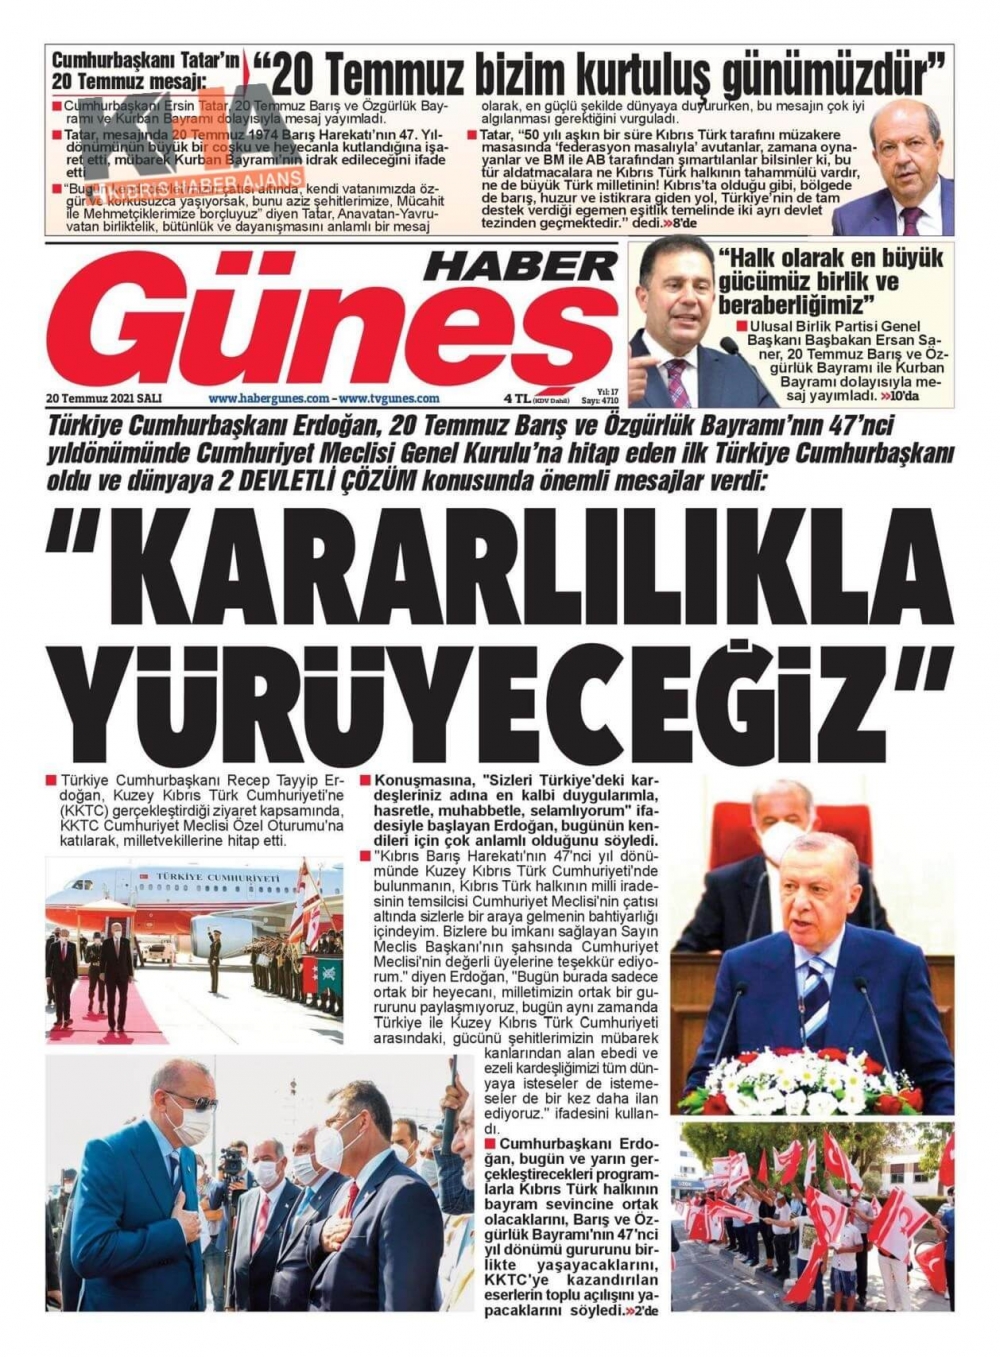 KKTC'de basılı gazeteler Erdoğan'ın Müjdesini nasıl gördü? galerisi resim 4